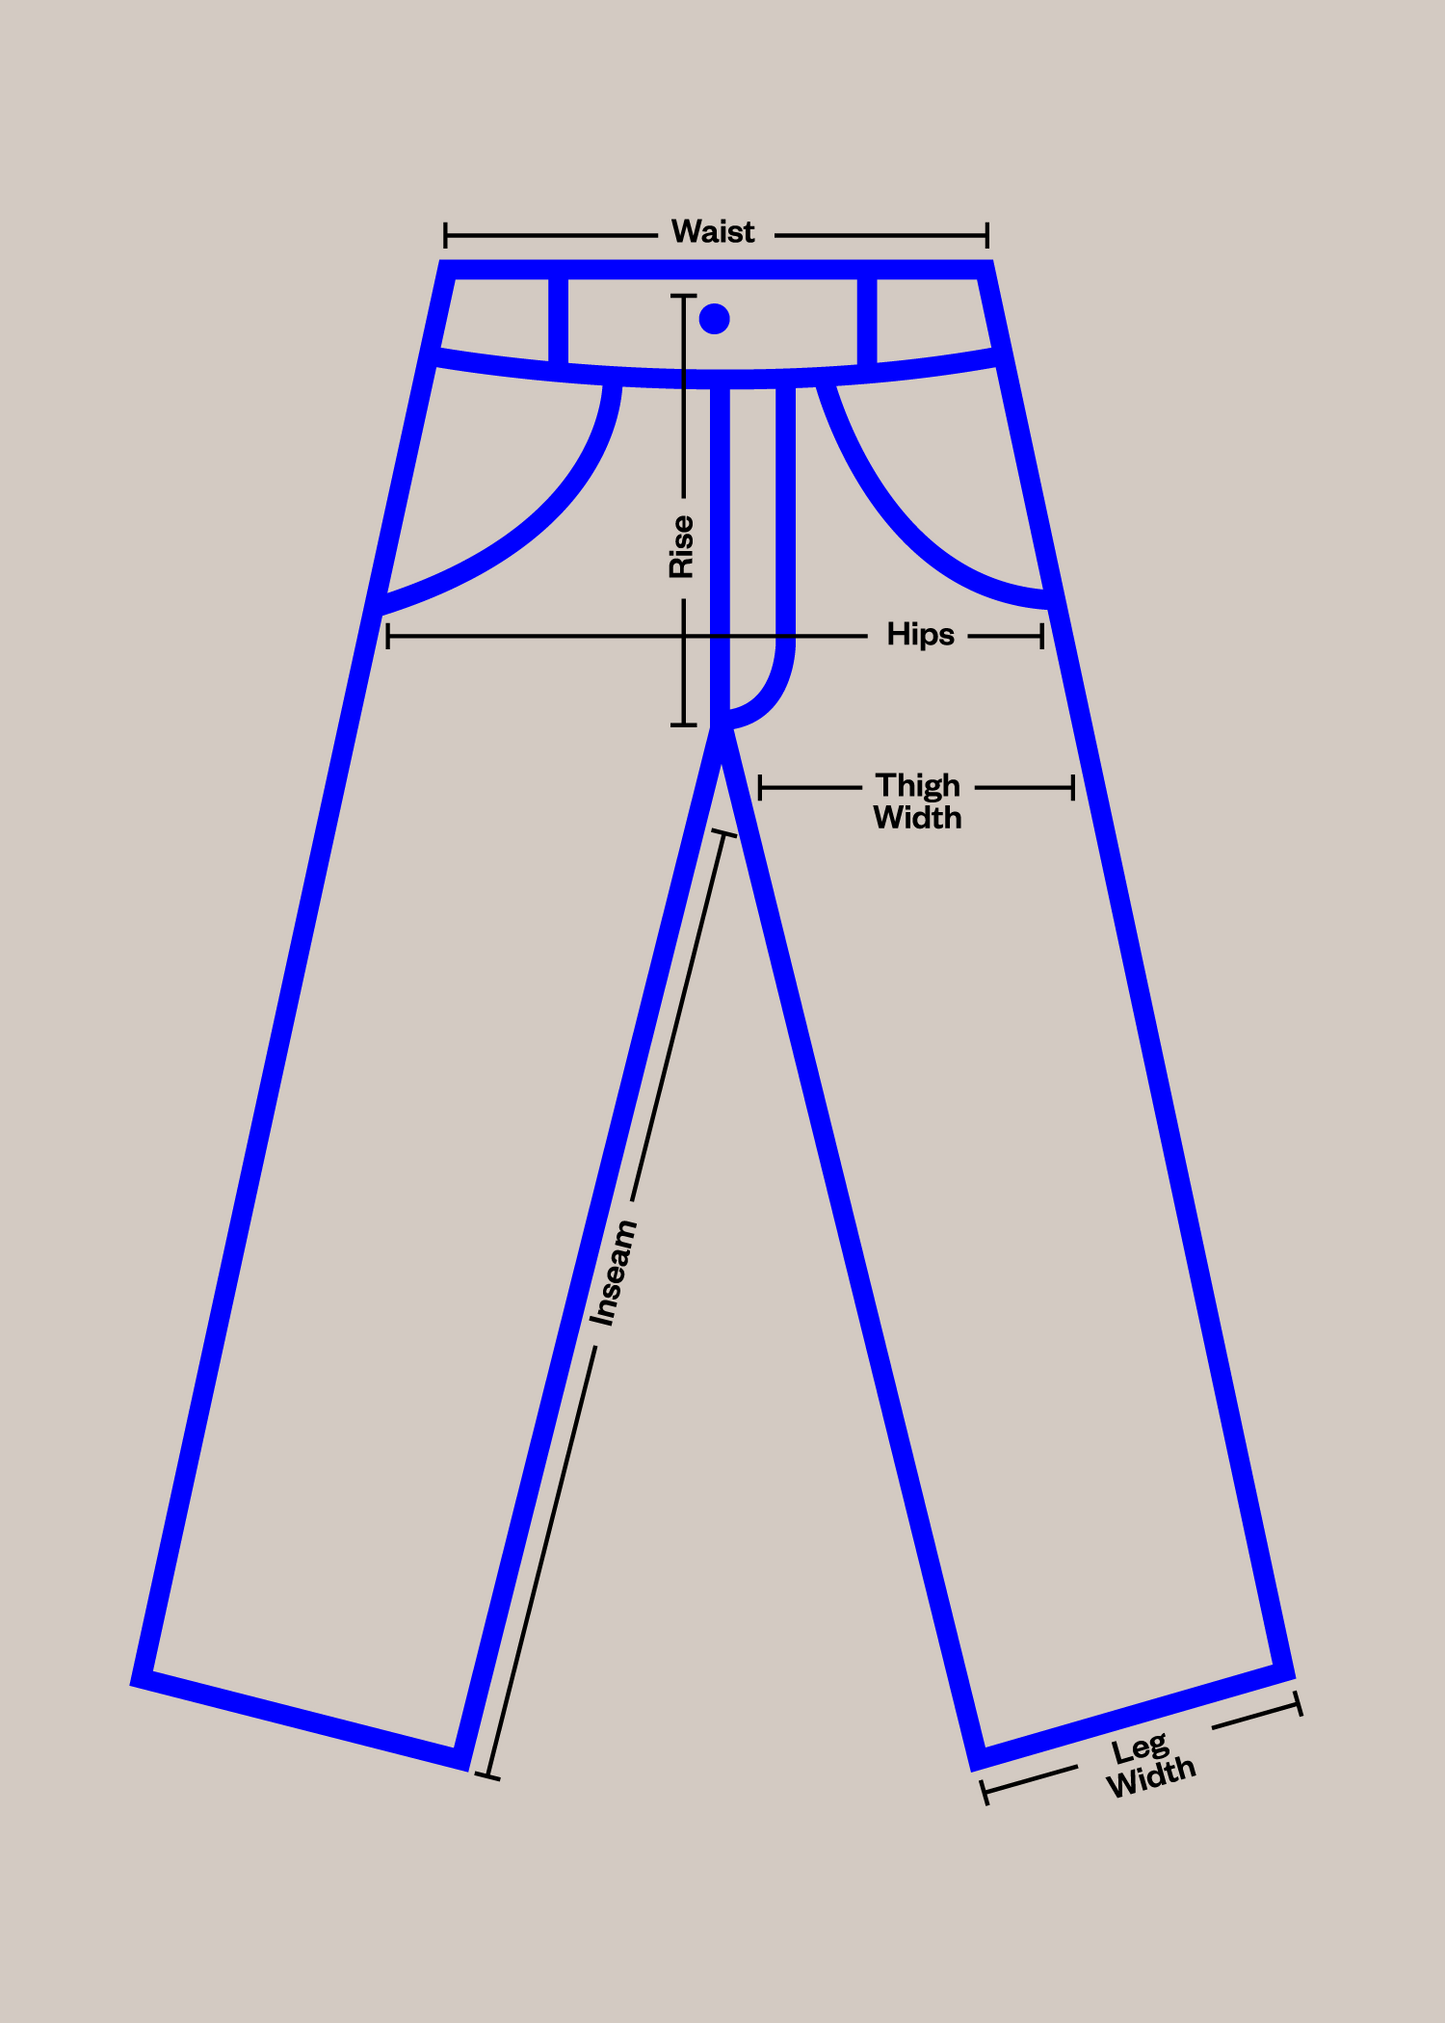 1980s European Workwear Chore Pants Size Women's 40 Men's 42